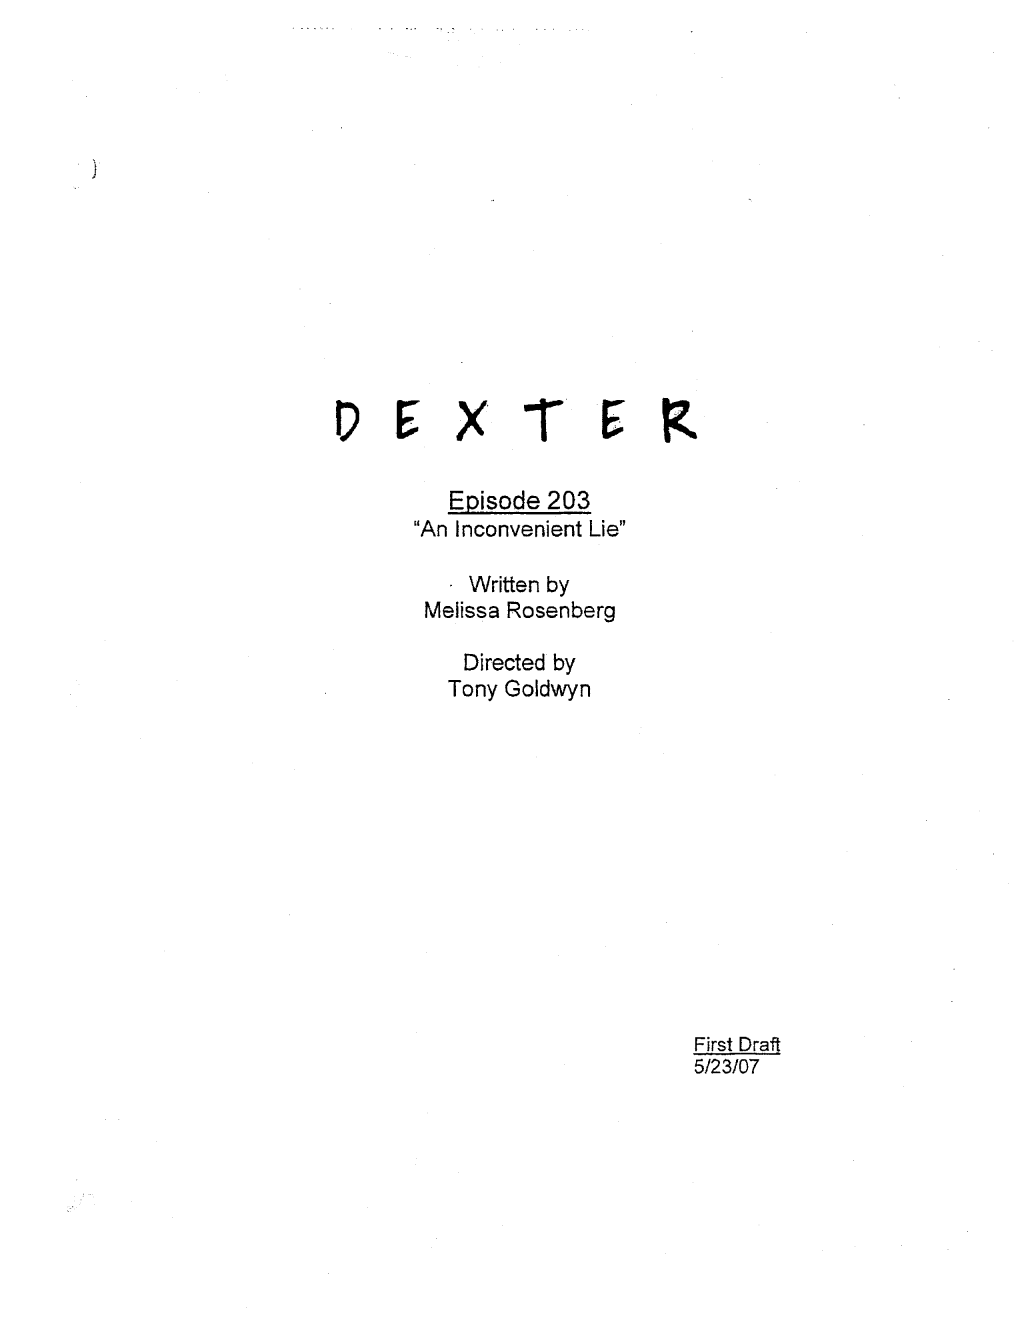 DEXTER Cast "An Inconvenientlie" 203 Firstdraft - 5/N/A7 DEXTER